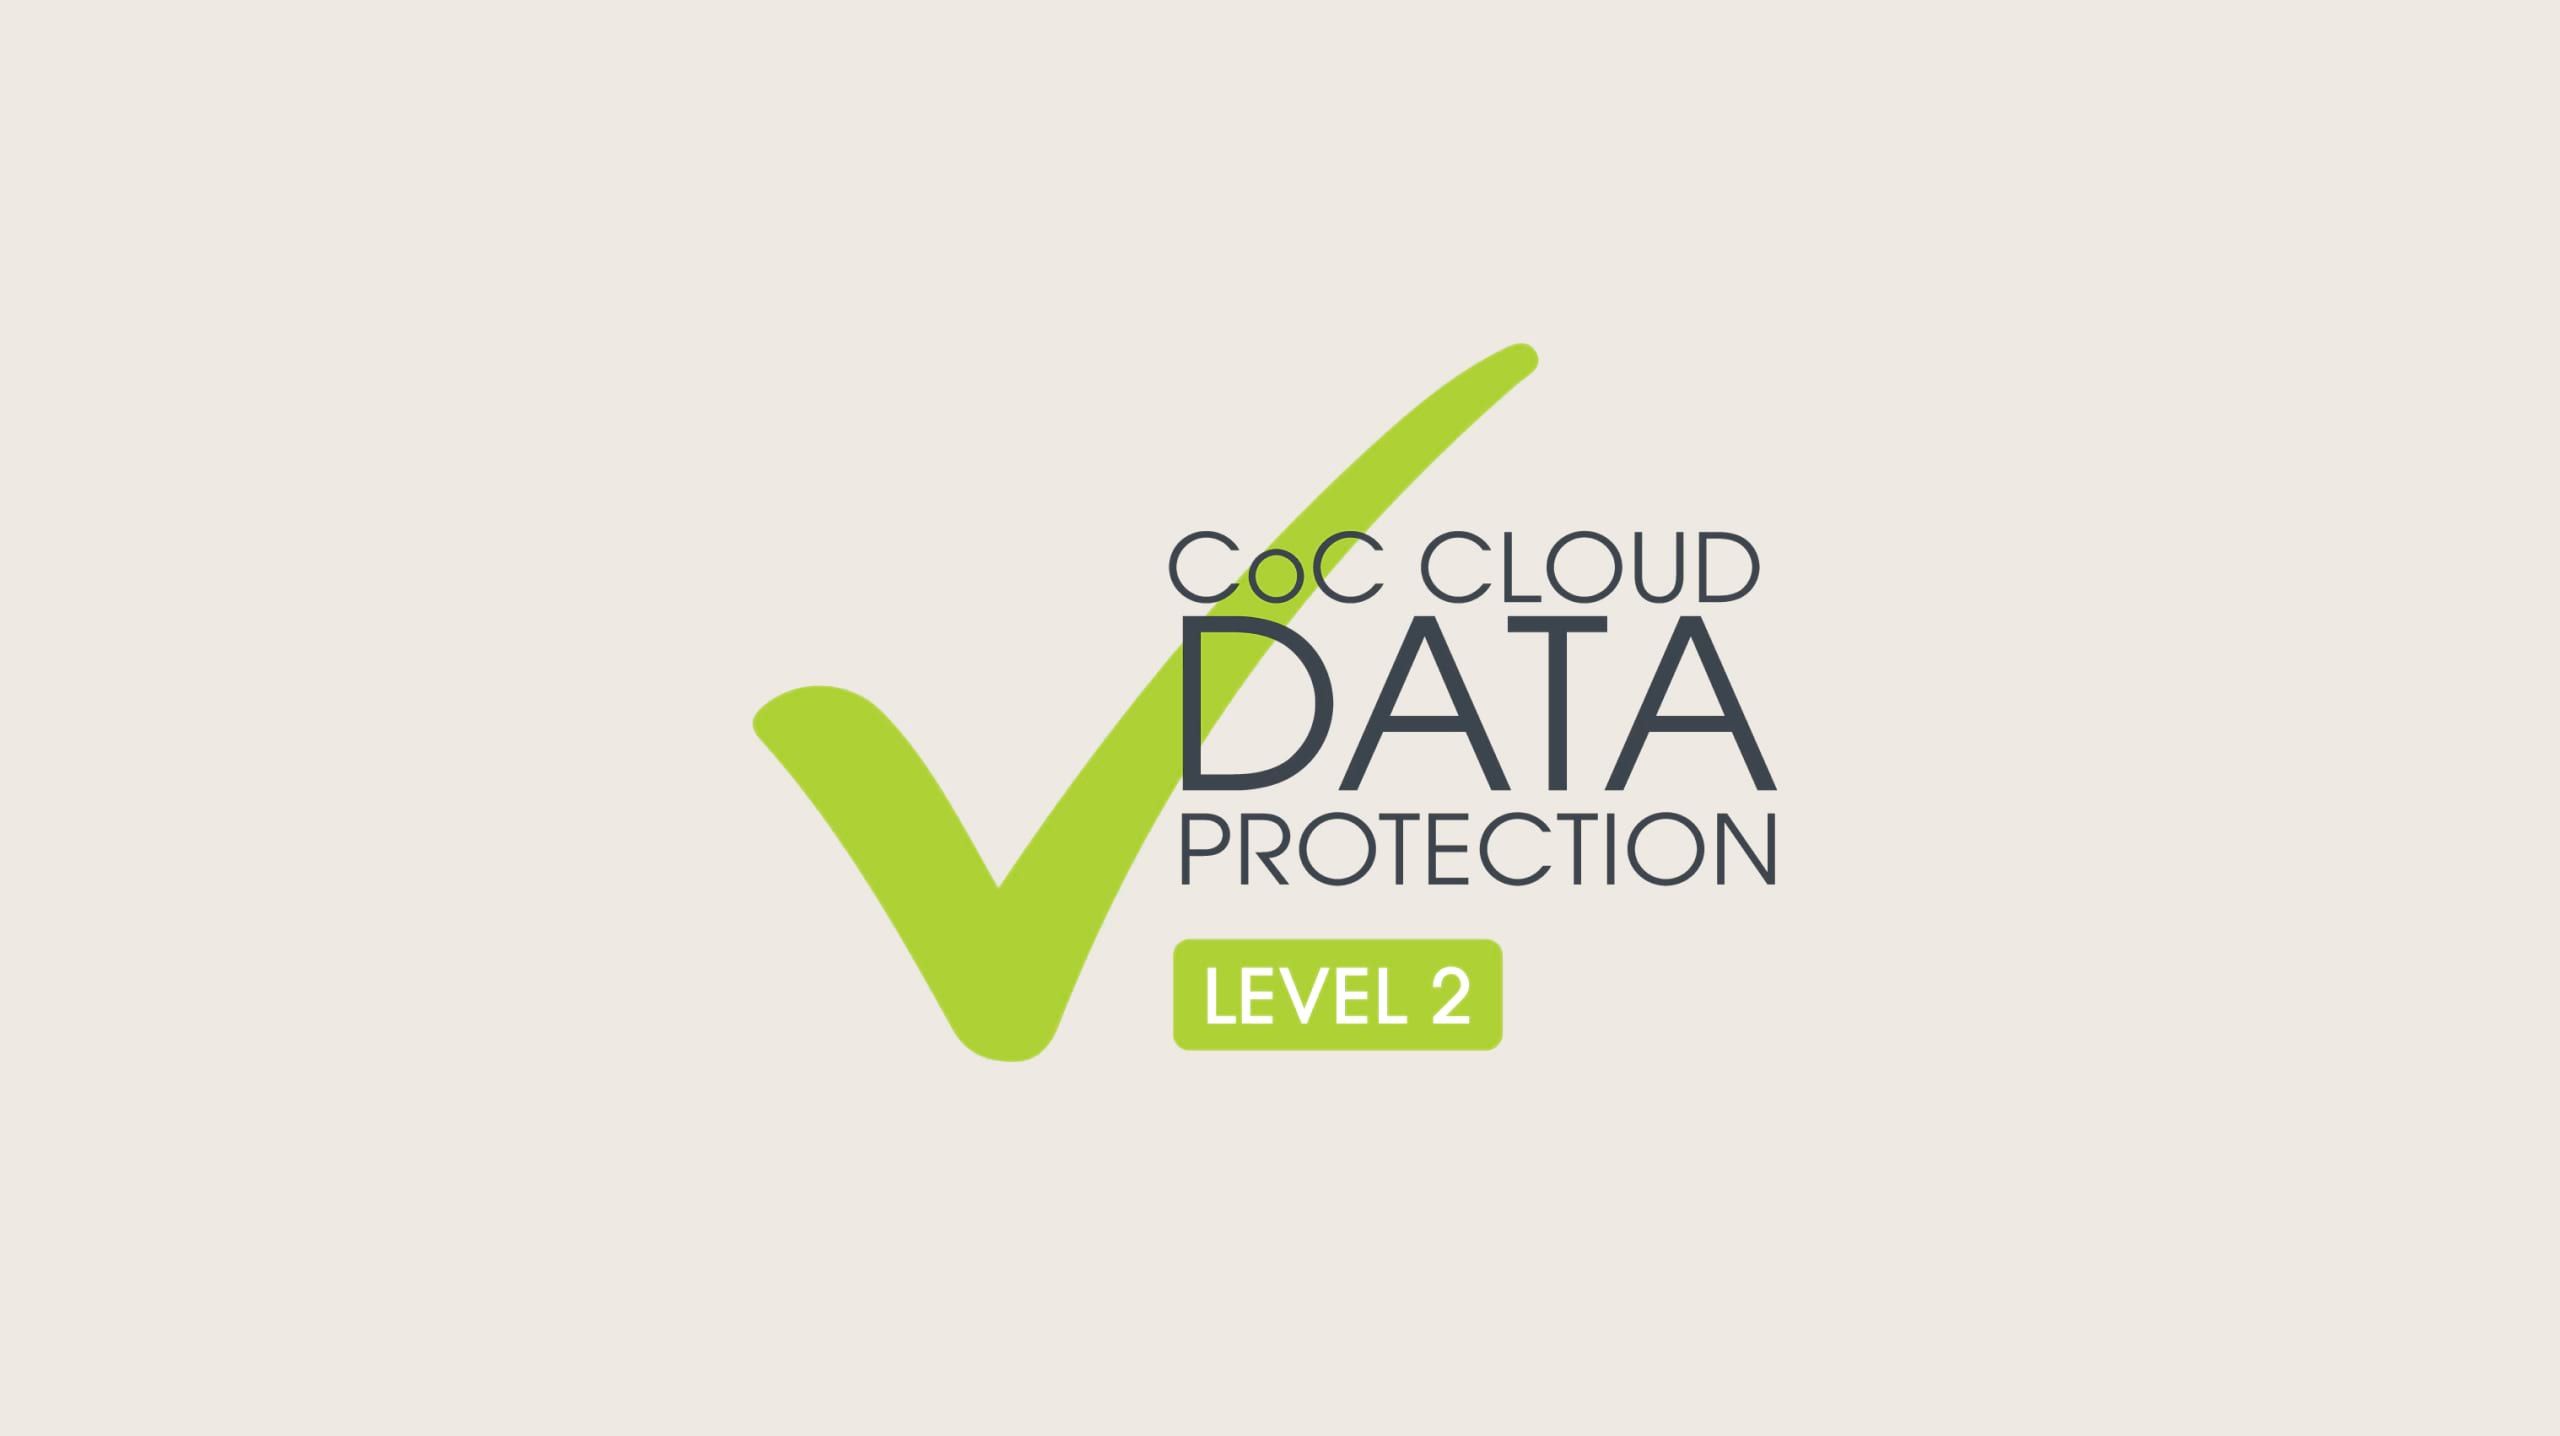 Кодекс поведения Защита облачных данных Уровень 2 Логотип